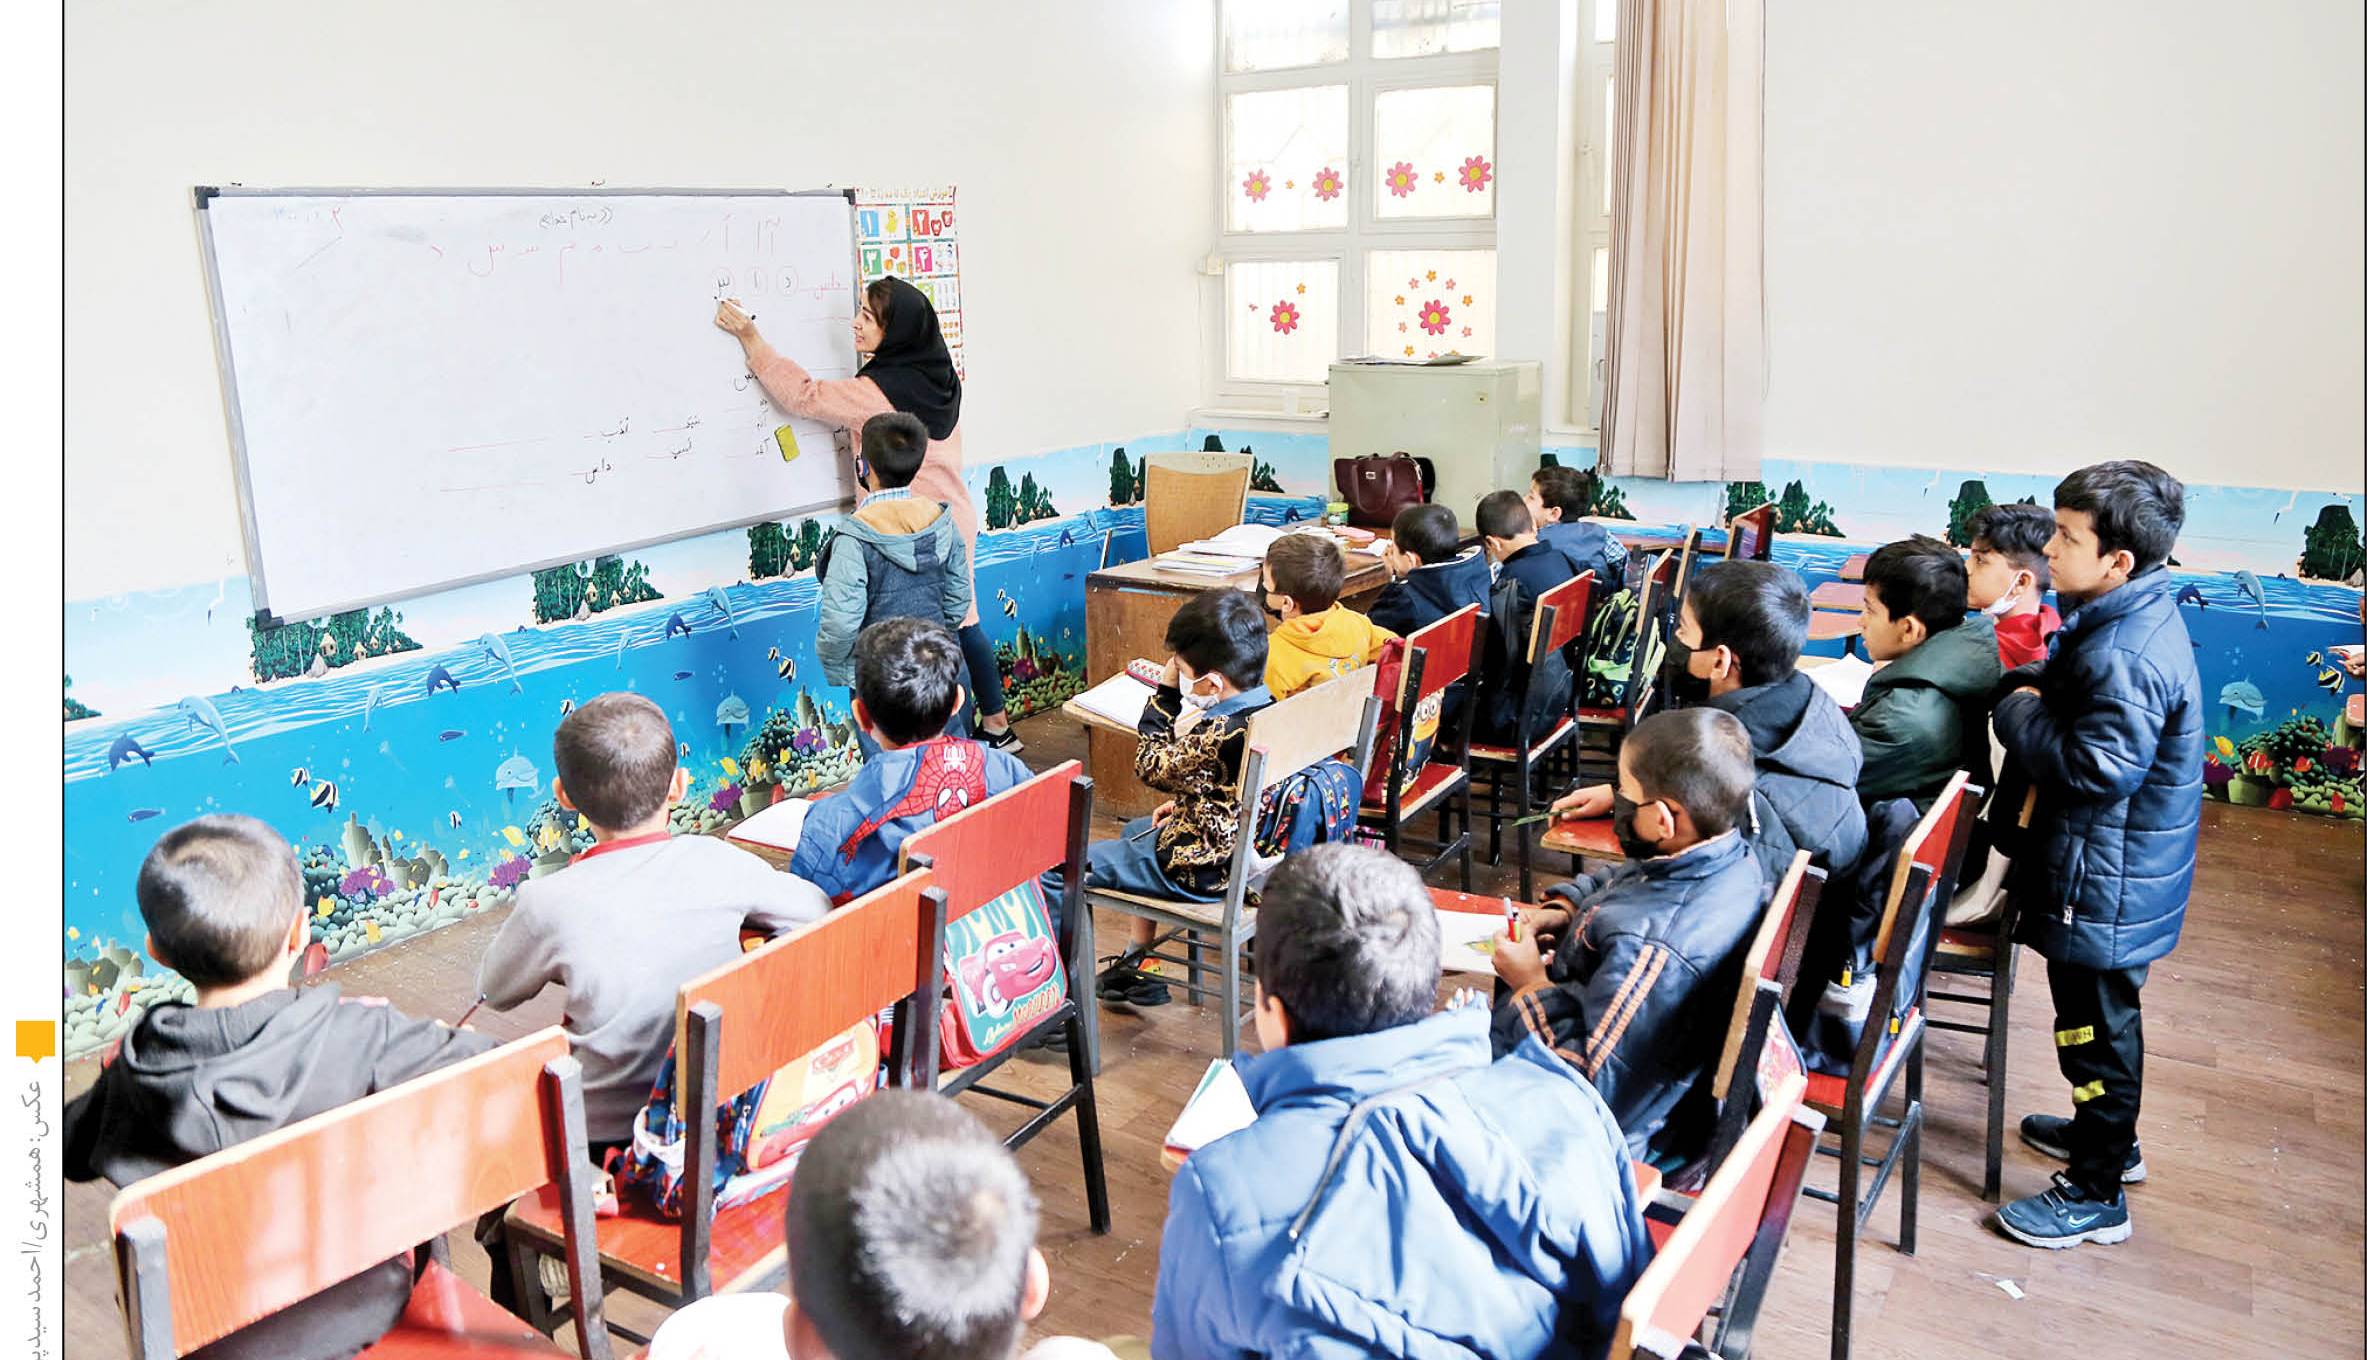 اعداد گویا از کمبود معلم در ایران